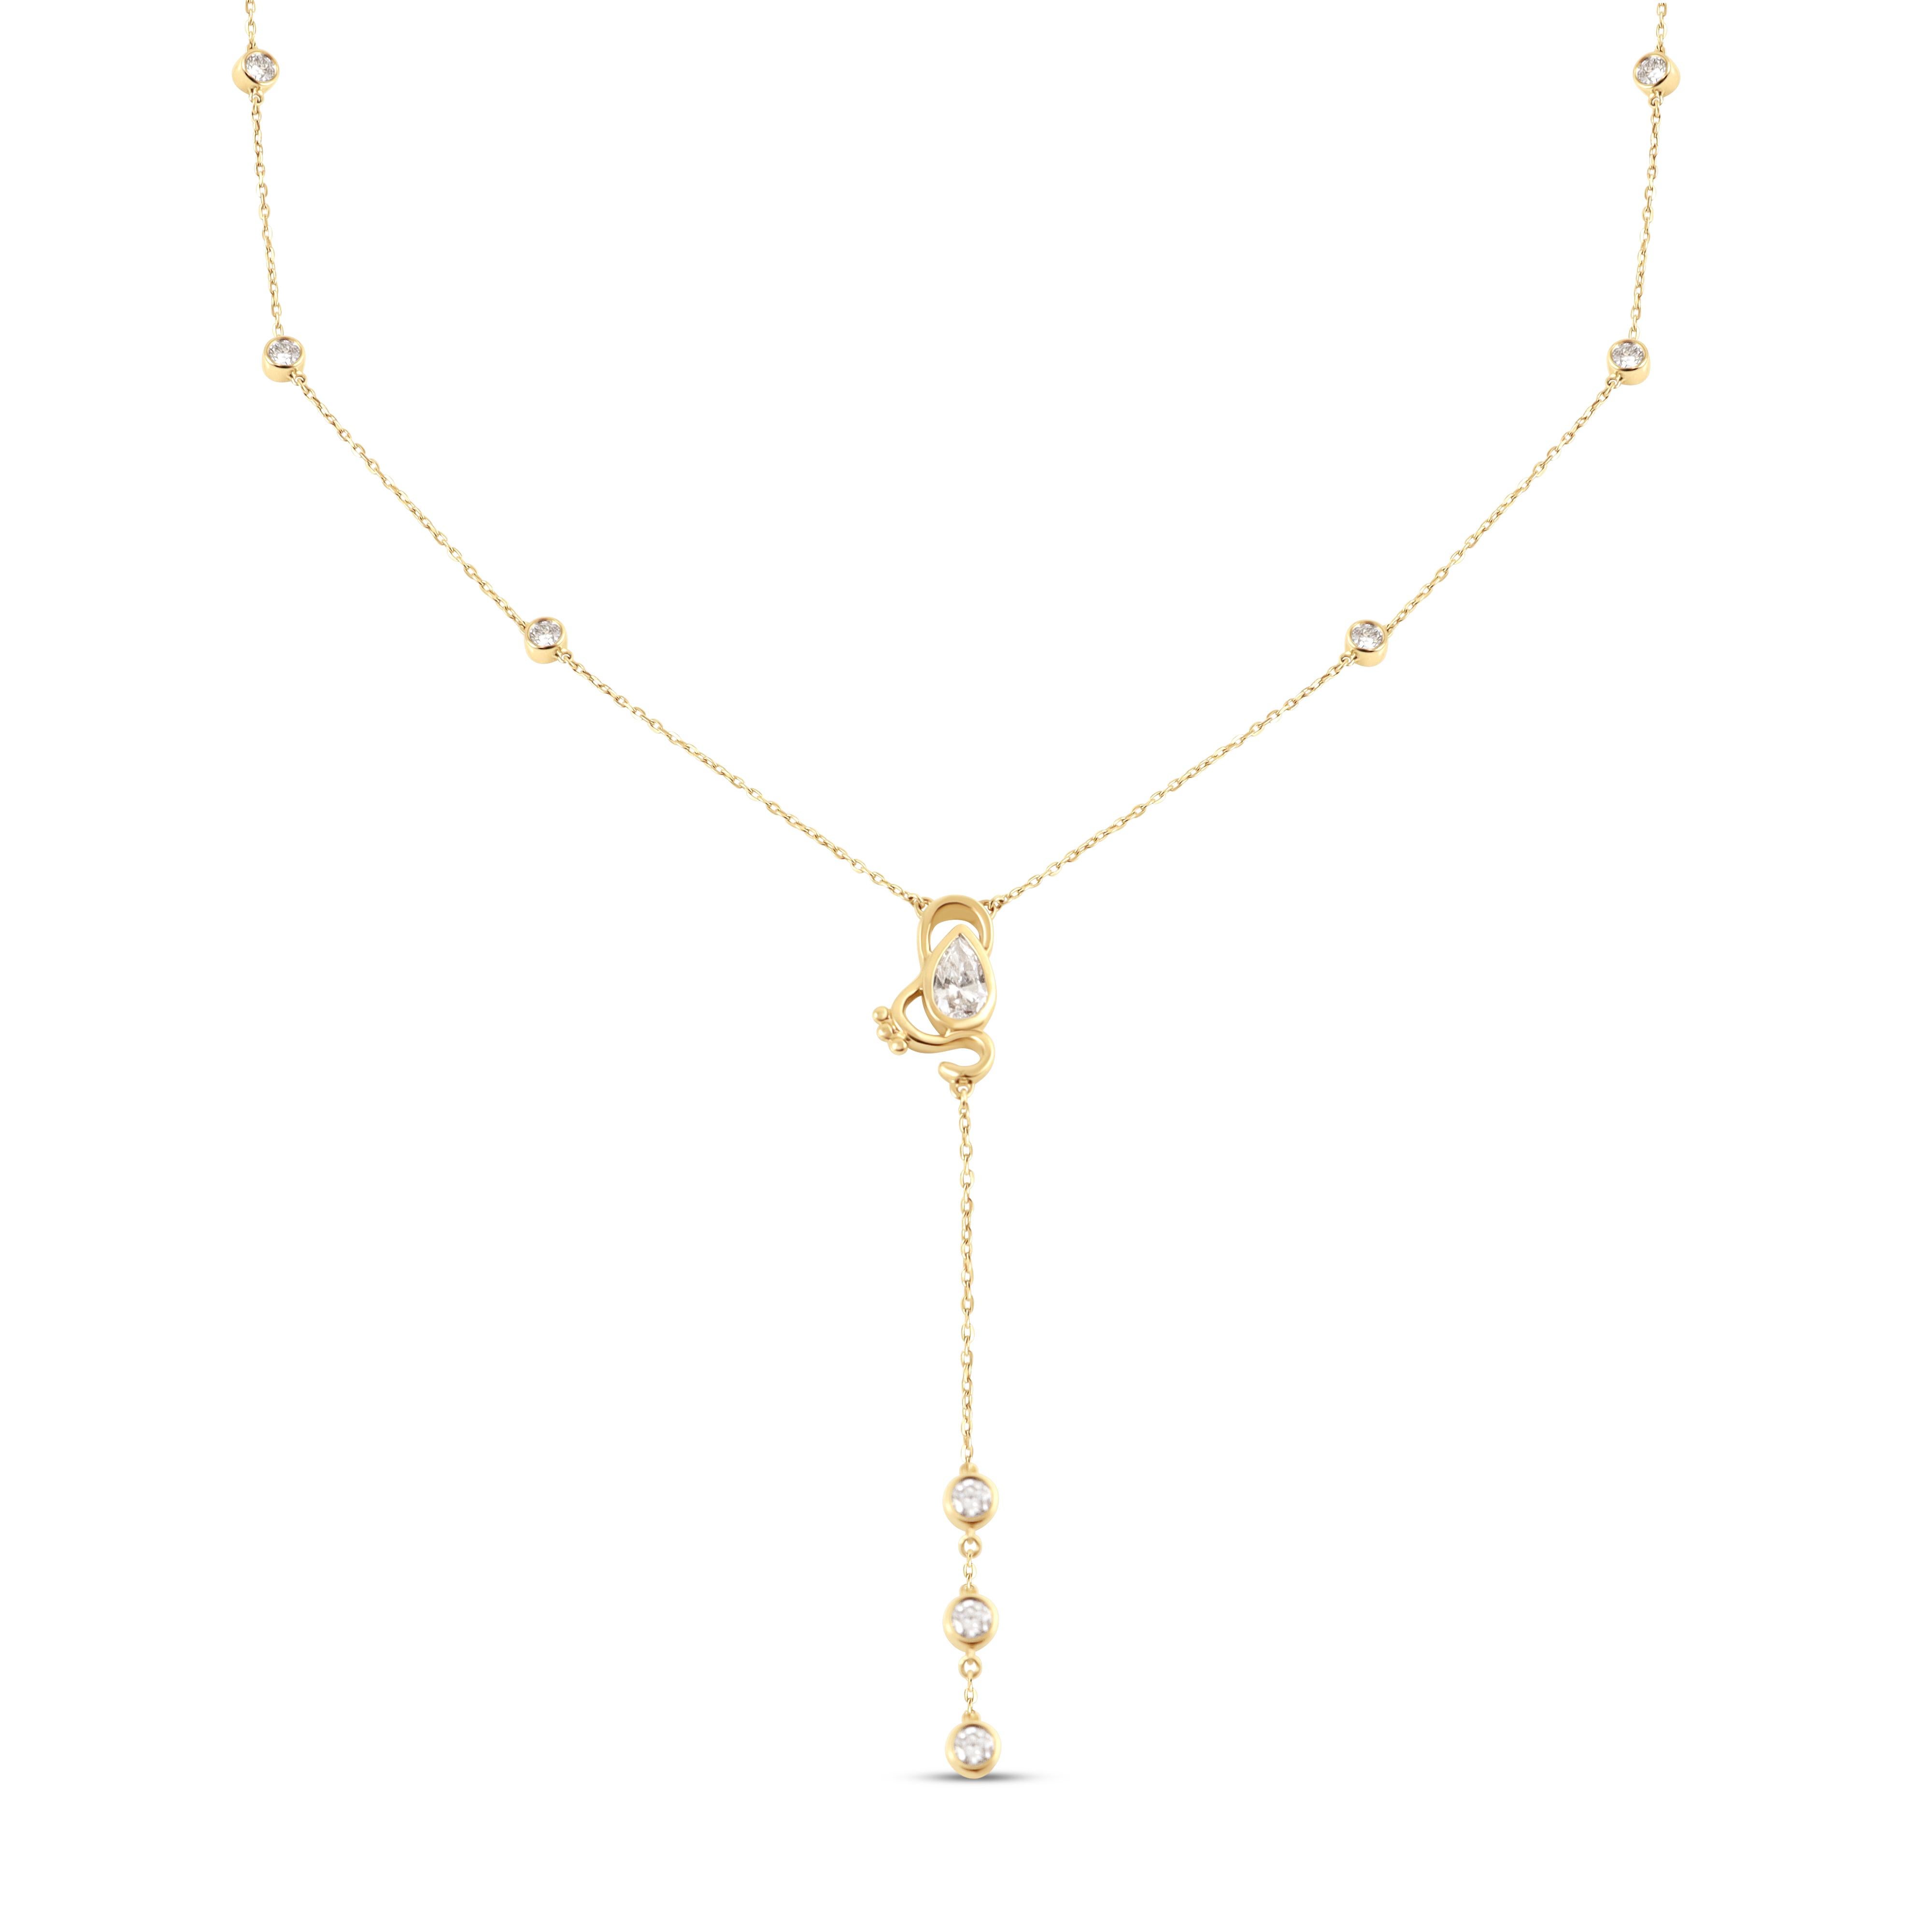 Die Gigi Drop Necklace von Jevela ist eine auffällige Tropfenkette mit einem VS-Diamanten in Birnenform.

Diese Halskette ist inspiriert von der Bedeutung des kontinuierlichen Wachstums auf der Reise des Lebens. Sowohl die Höhen als auch die Tiefen